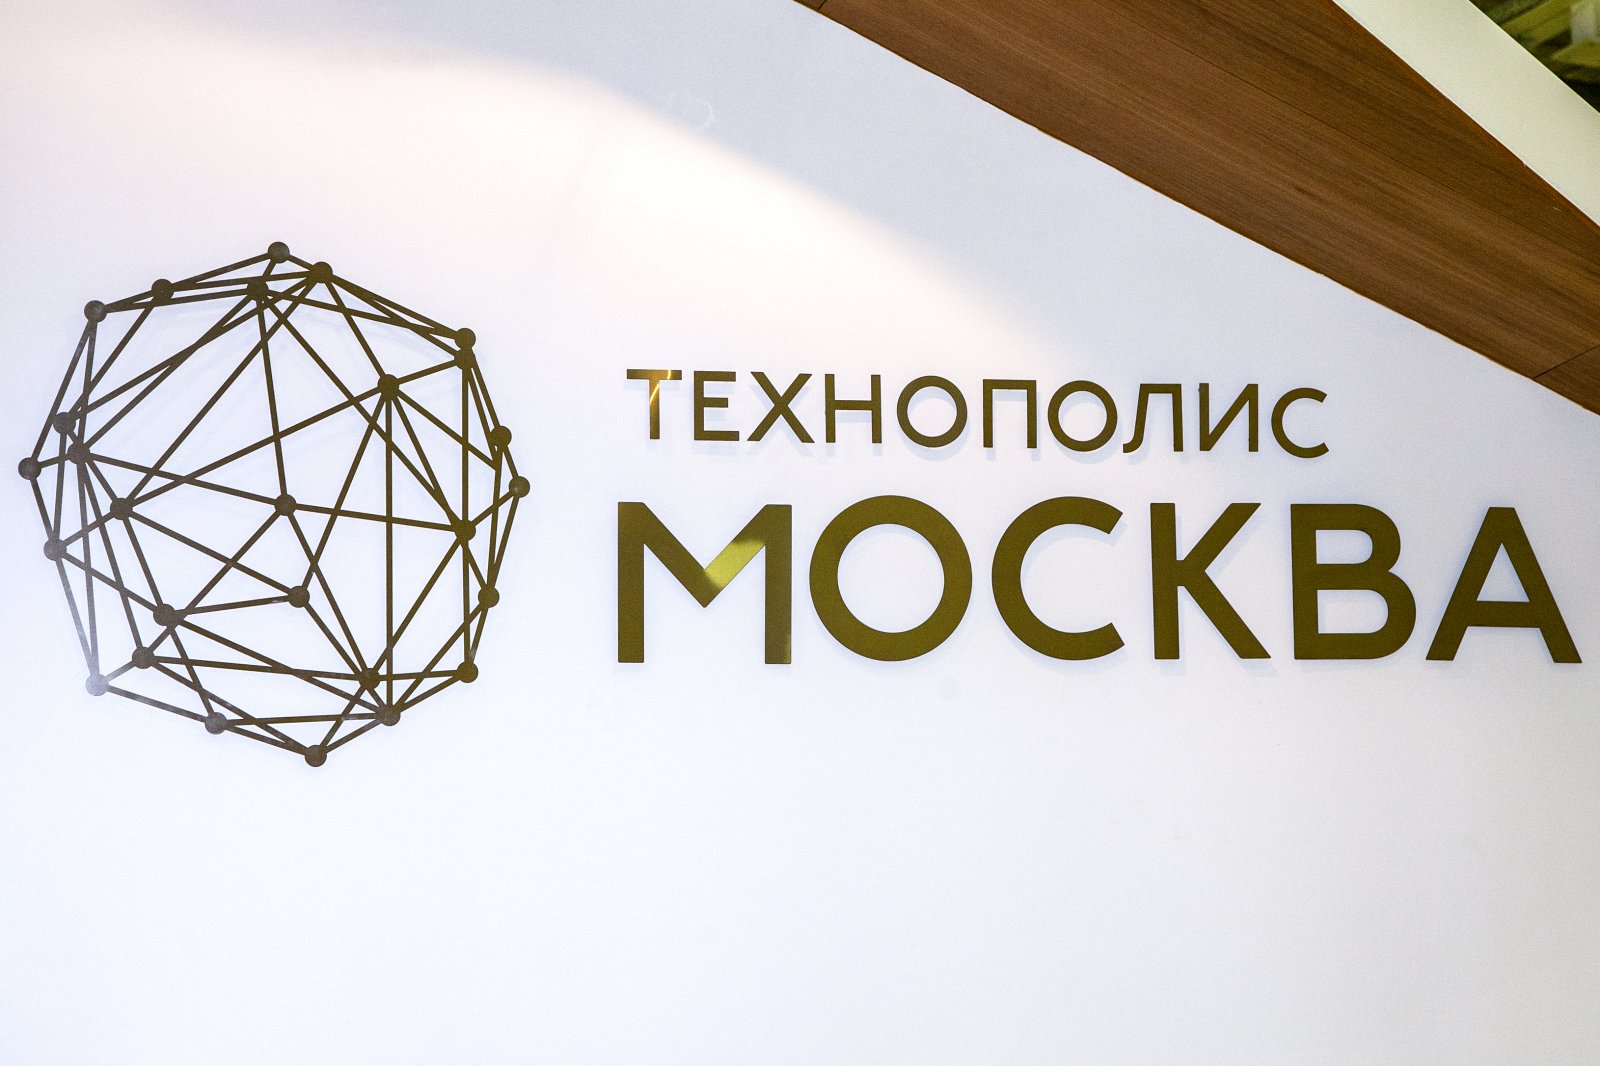 В ОЭЗ «Технополис “Москва”» готовы заместить зарубежных производителей металлорежущего инструмента - фото 1